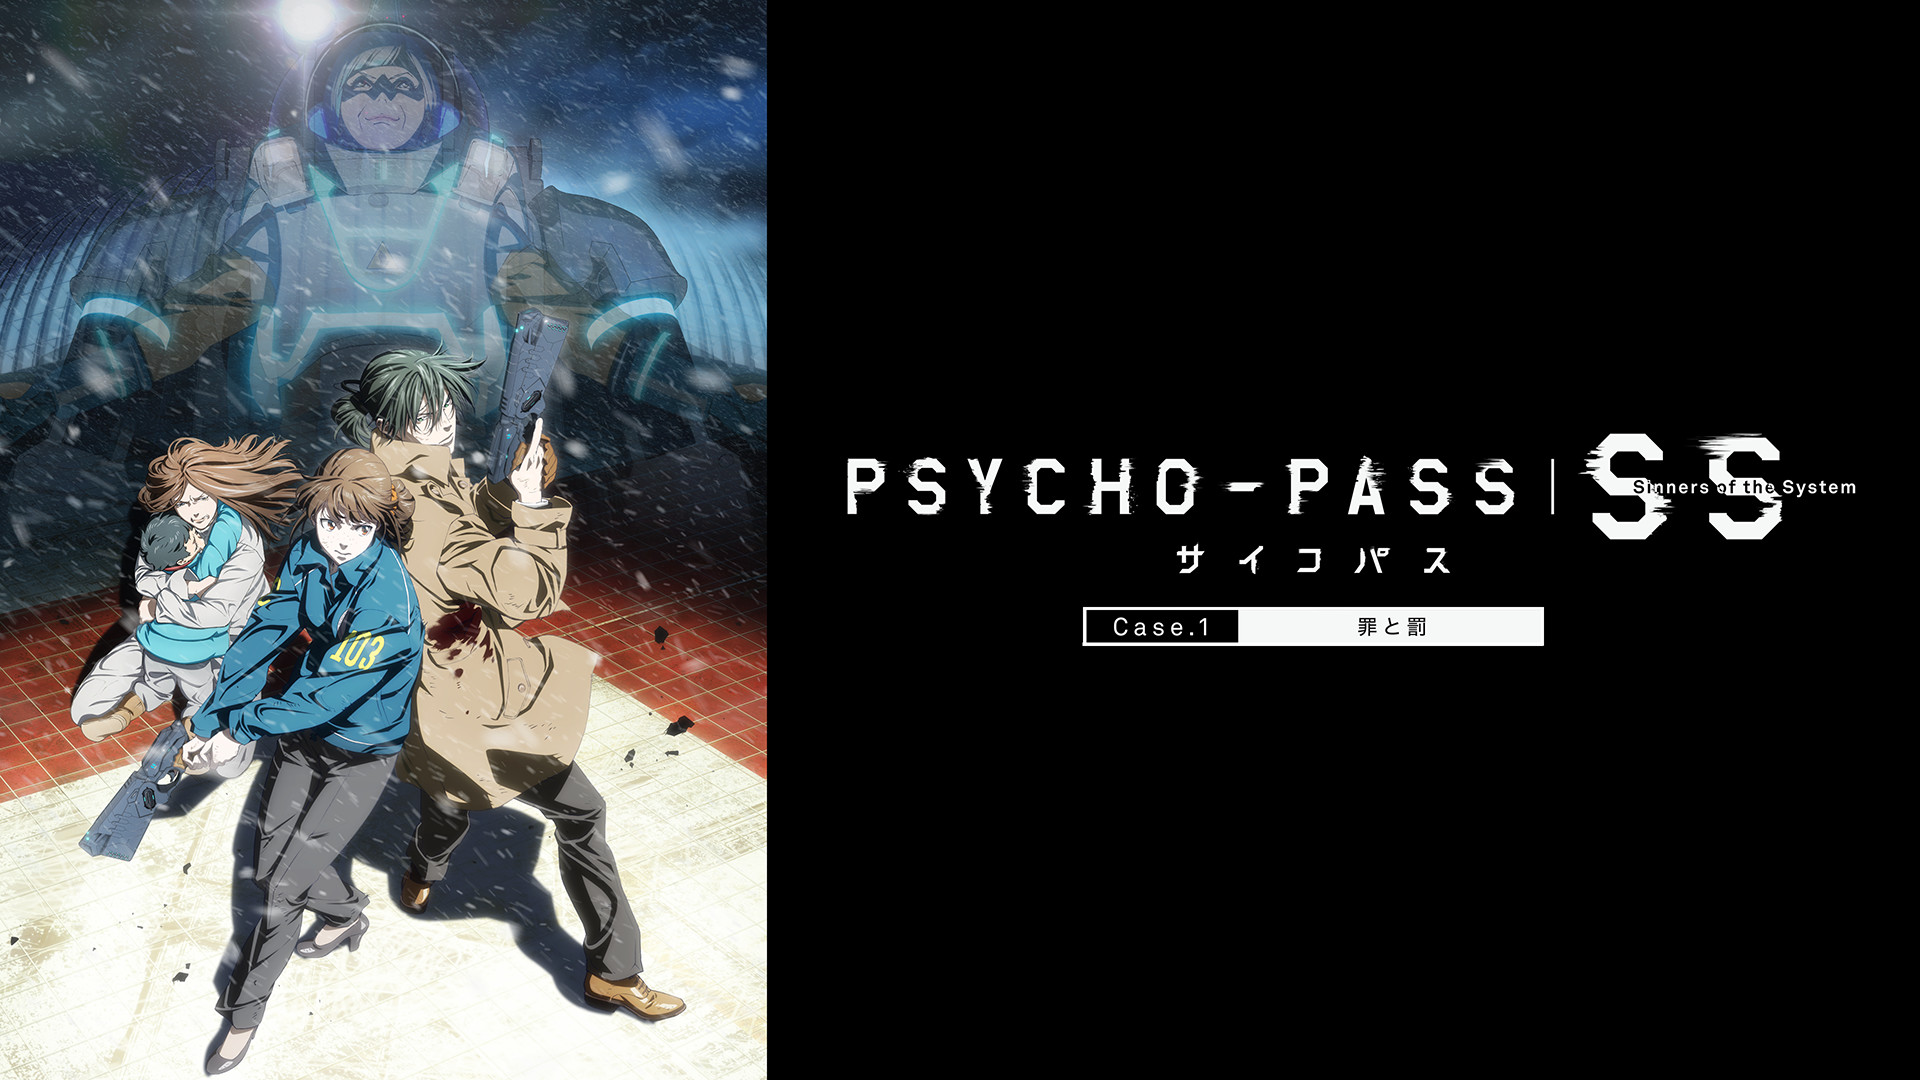 PSYCHO-PASS サイコパス 11冊セット 【全巻初版】 - 漫画、コミック